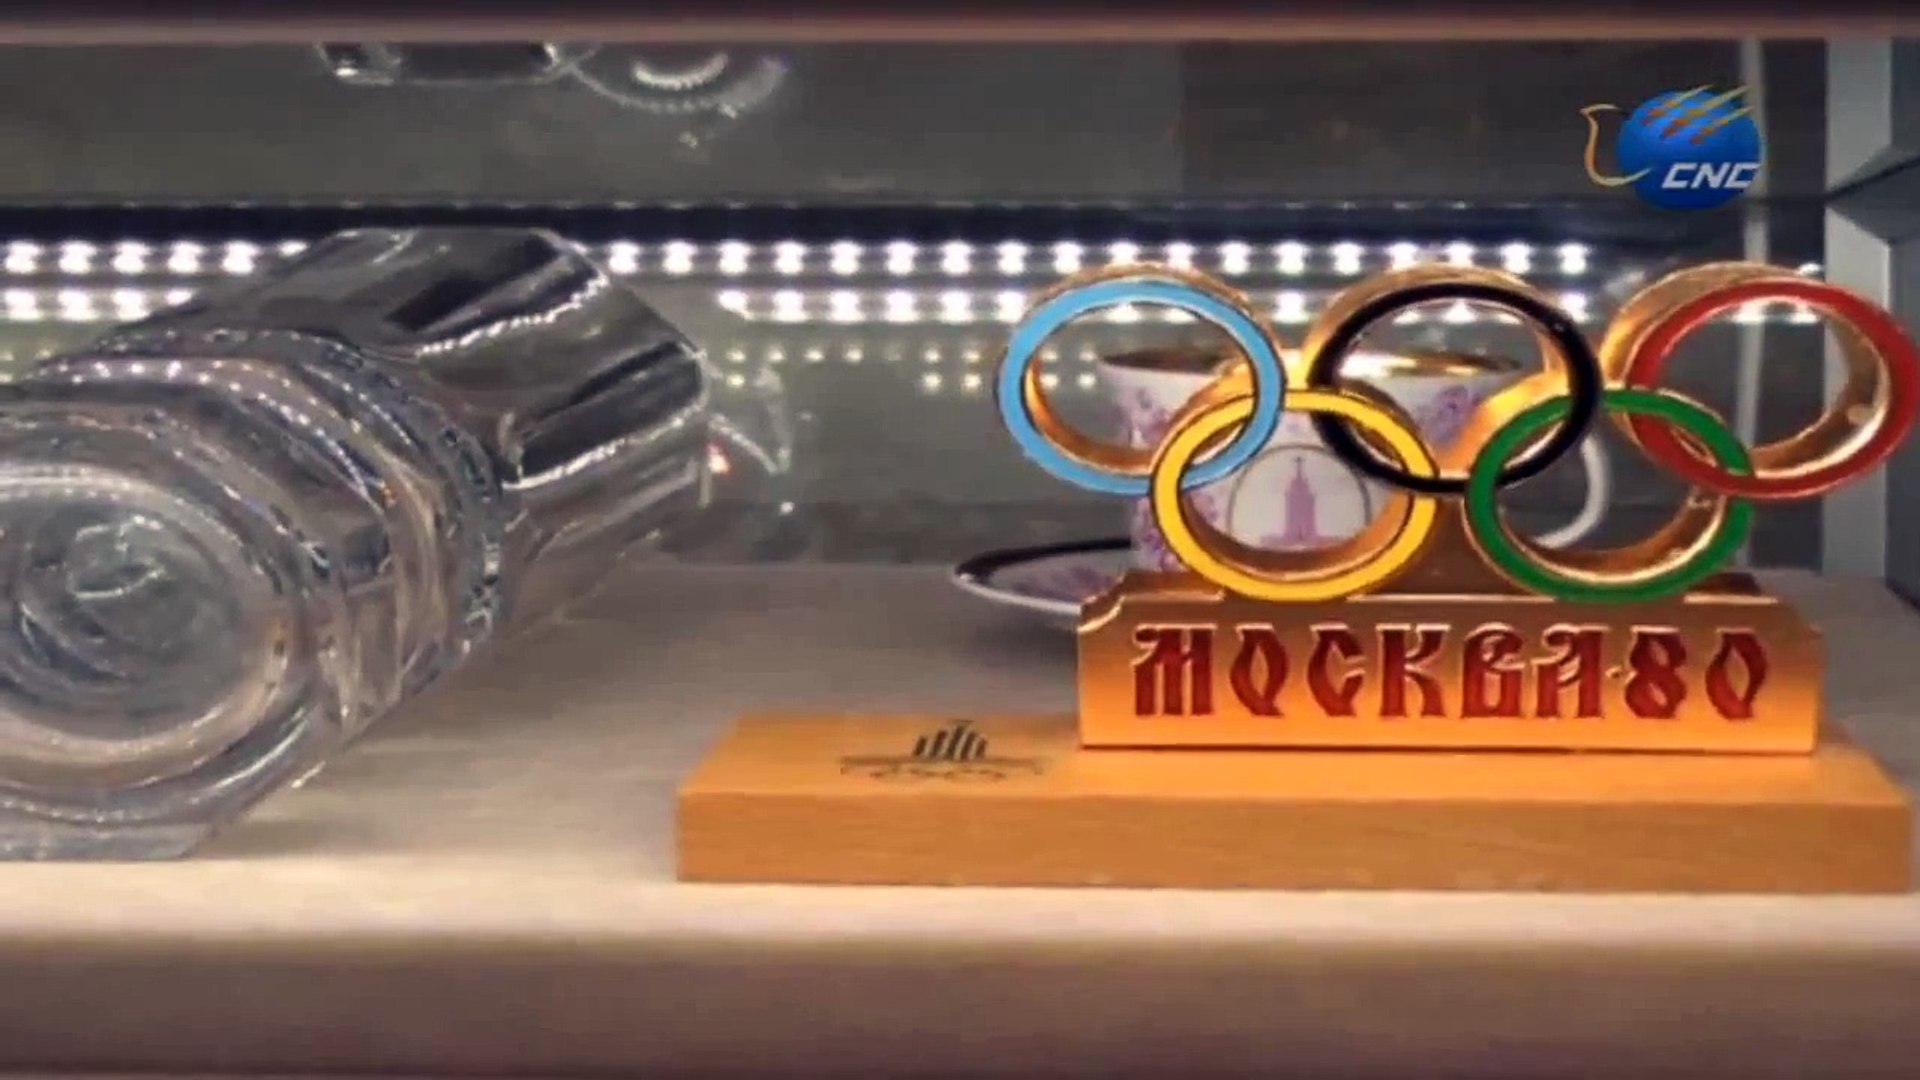 Exposición dedicada a los Juegos Olímpicos de Sochi